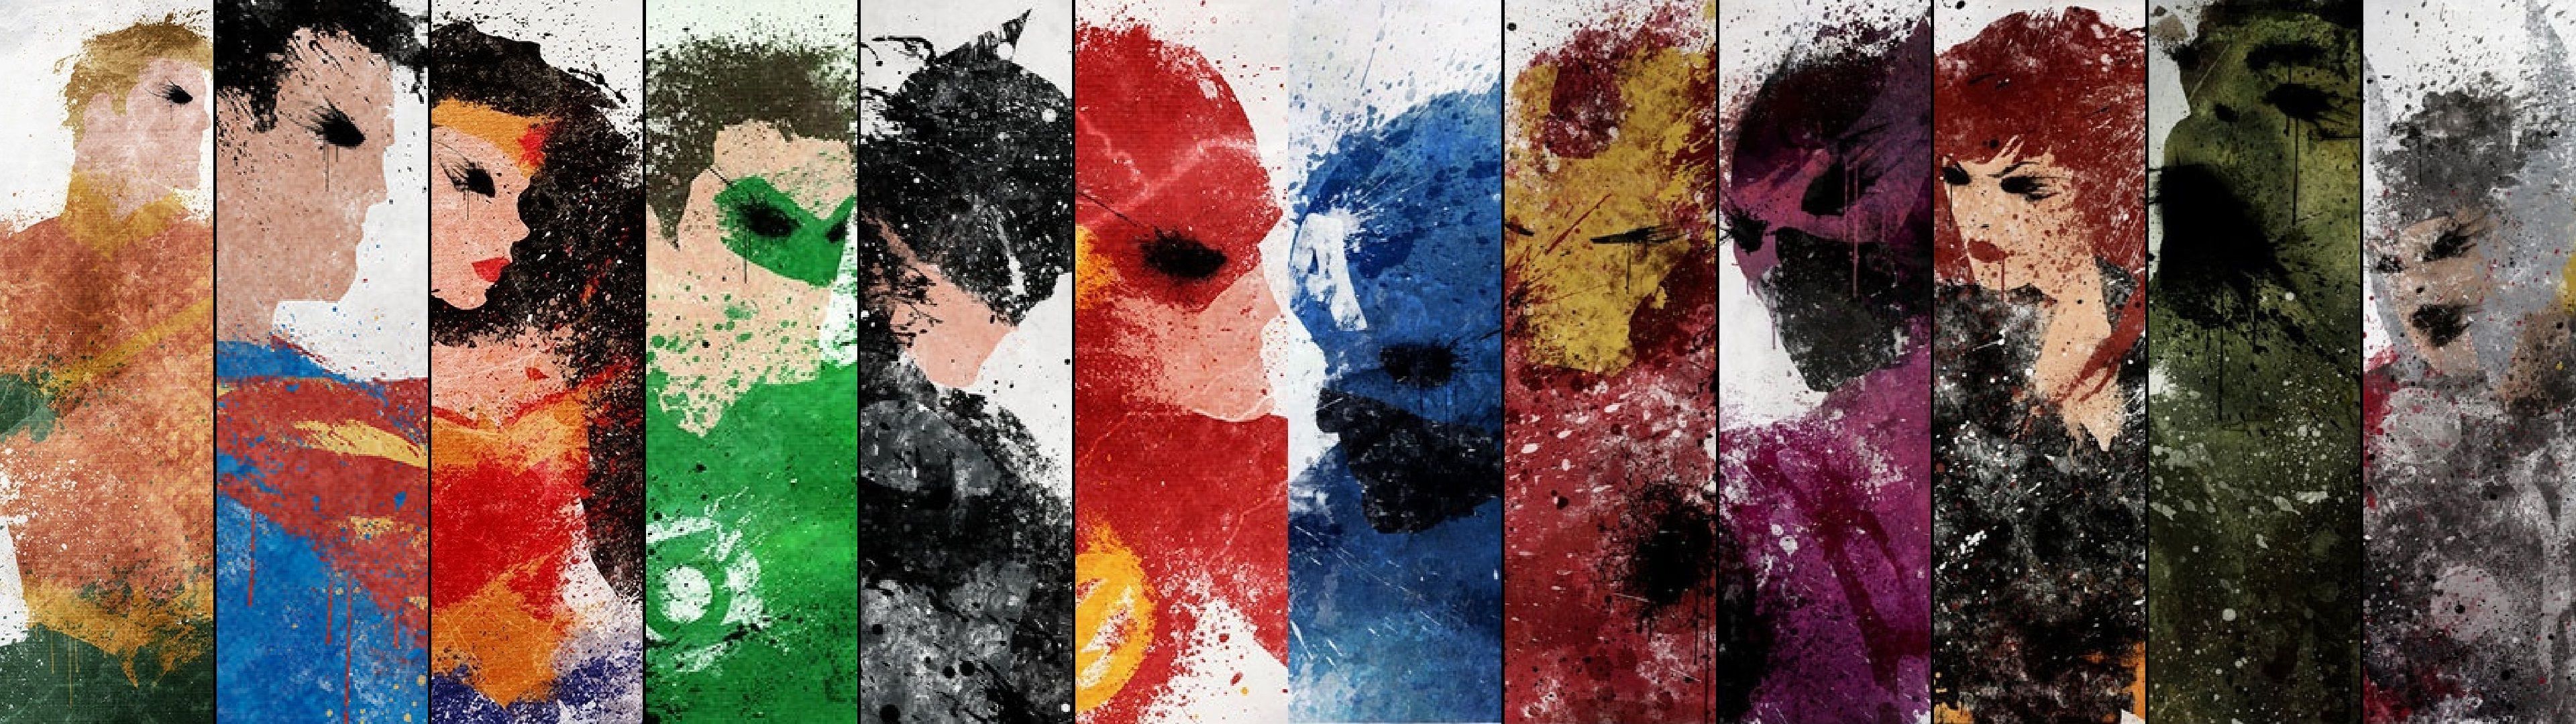 Splash Art: Justice League vs. Avengers Wallpaper 3840 x 1080 px ...